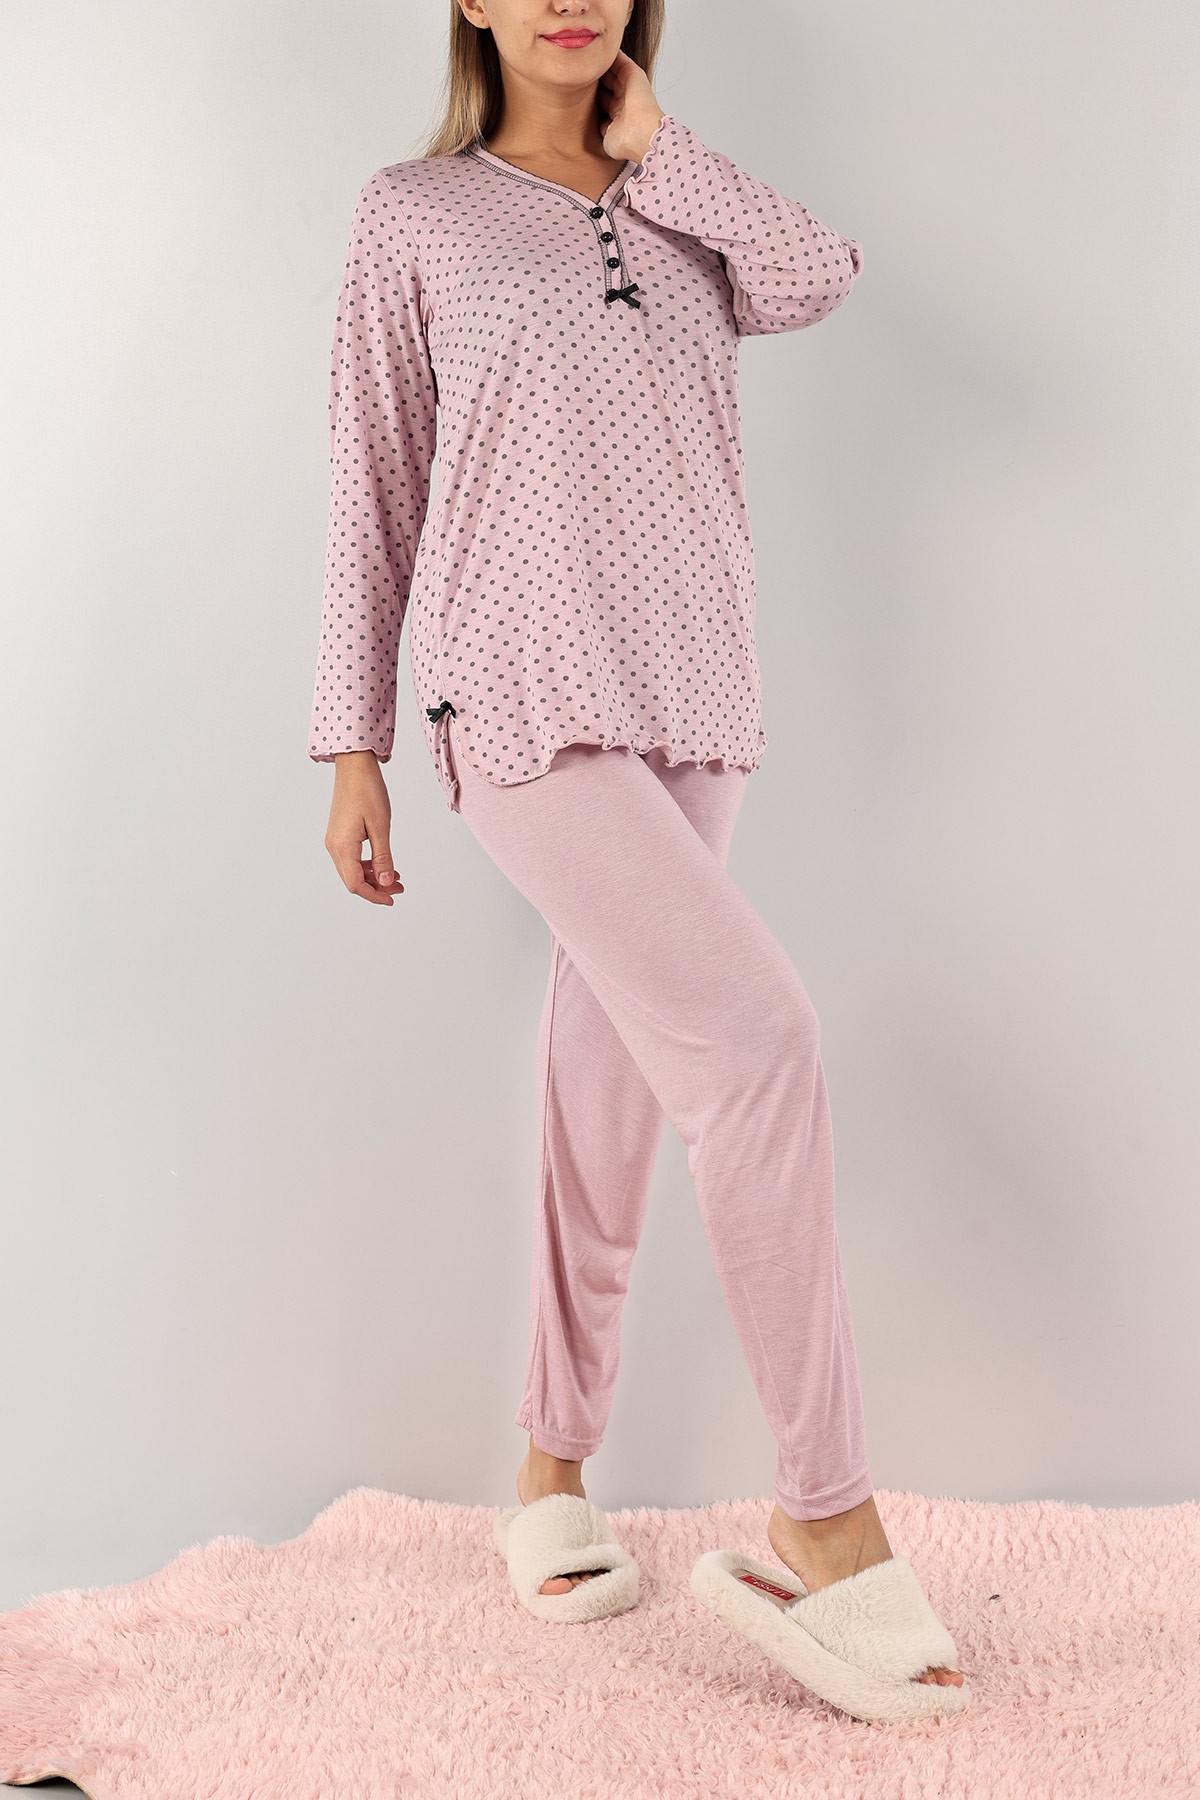 Pembe Düğmeli Nakışlı Bayan Pijama Takımı 132262